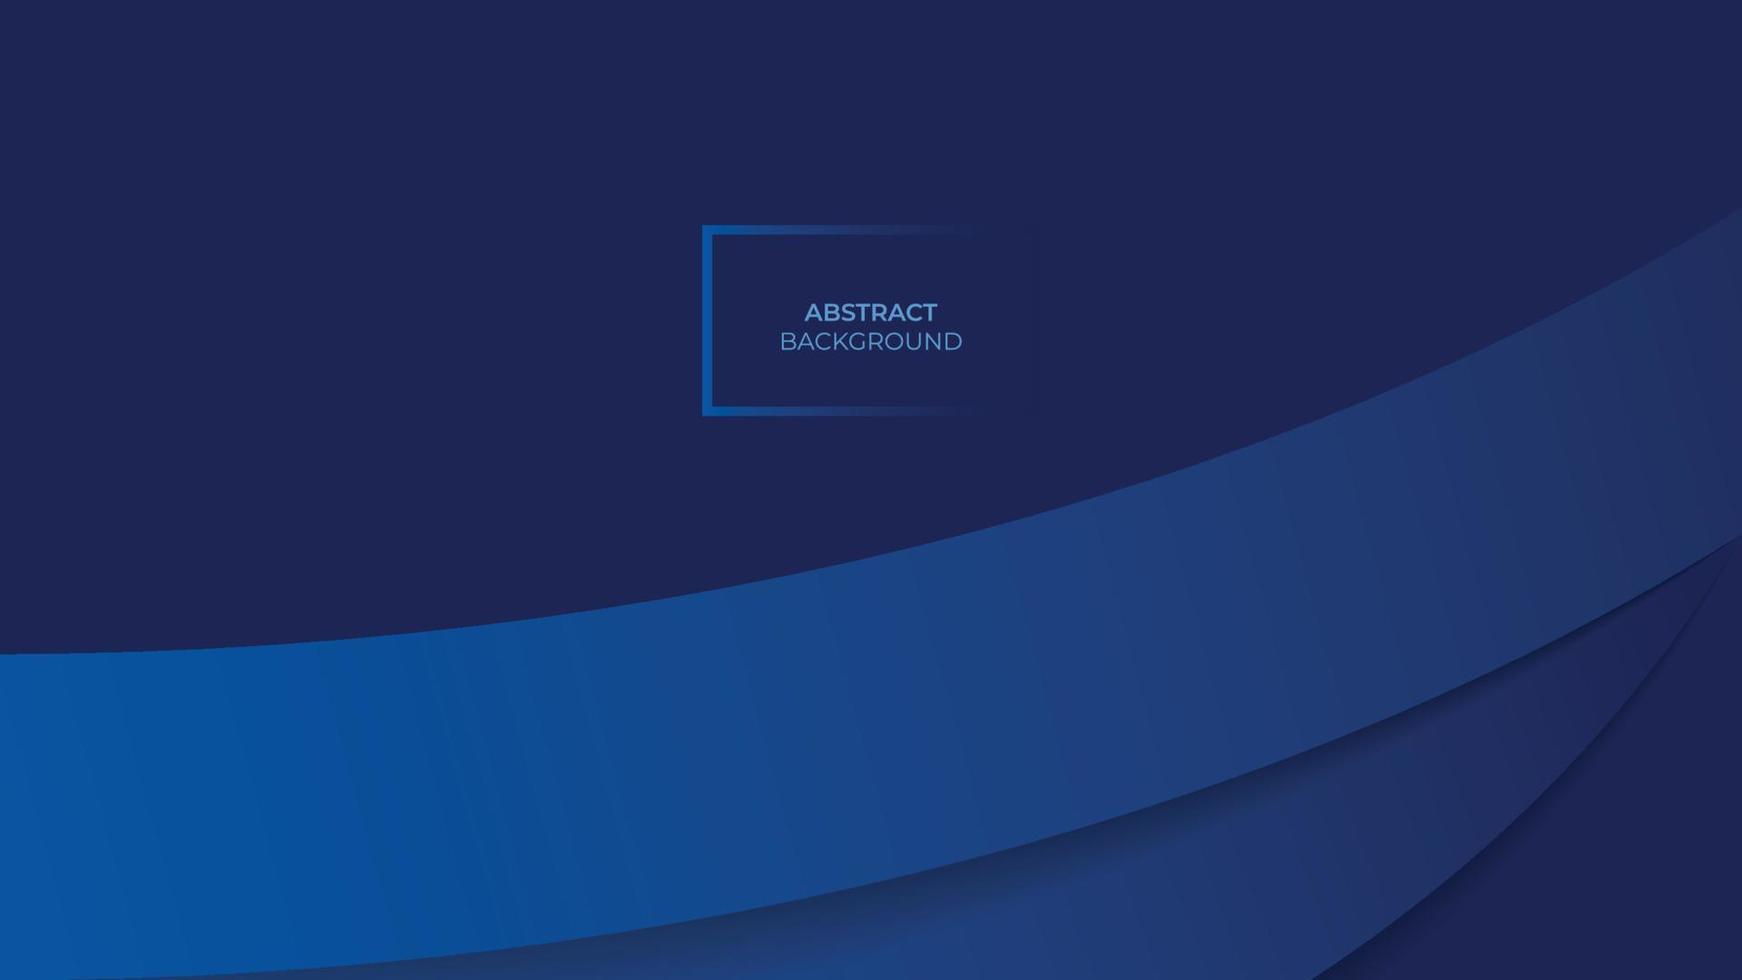 minimalistisk blå premium abstrakt bakgrund med 3d abstrakta former. kan användas för reklam, marknadsföring, presentation, affisch, broschyr, hemsida etc. vektor eps